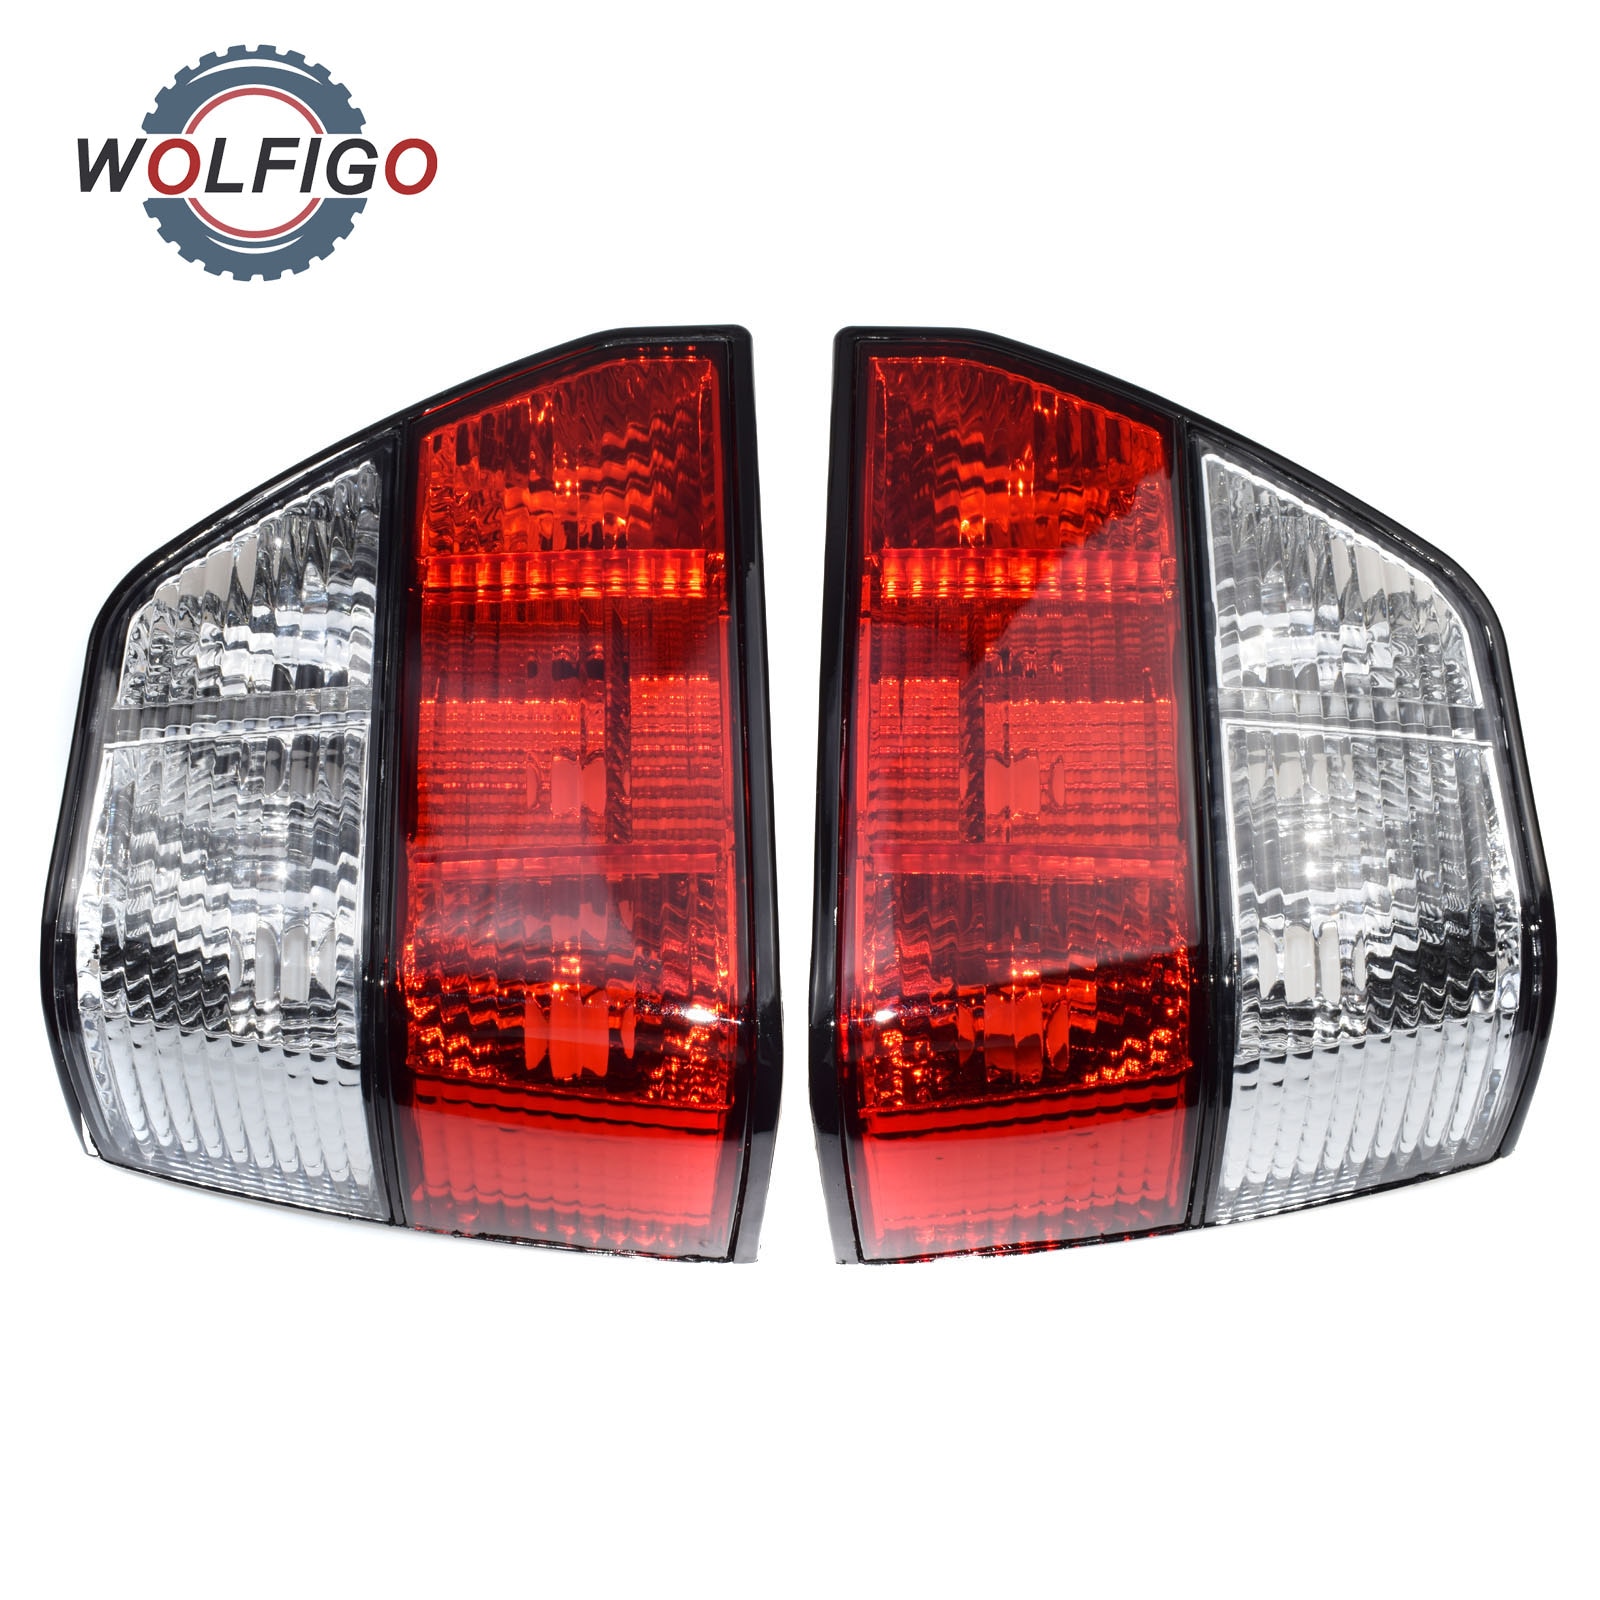 WOLFIGO 2 stks Links & Rechts Paar Achterlicht Staart Remlicht Behuizing Cover voor VW Golf MK2 1984-1992 191945111A 191945112